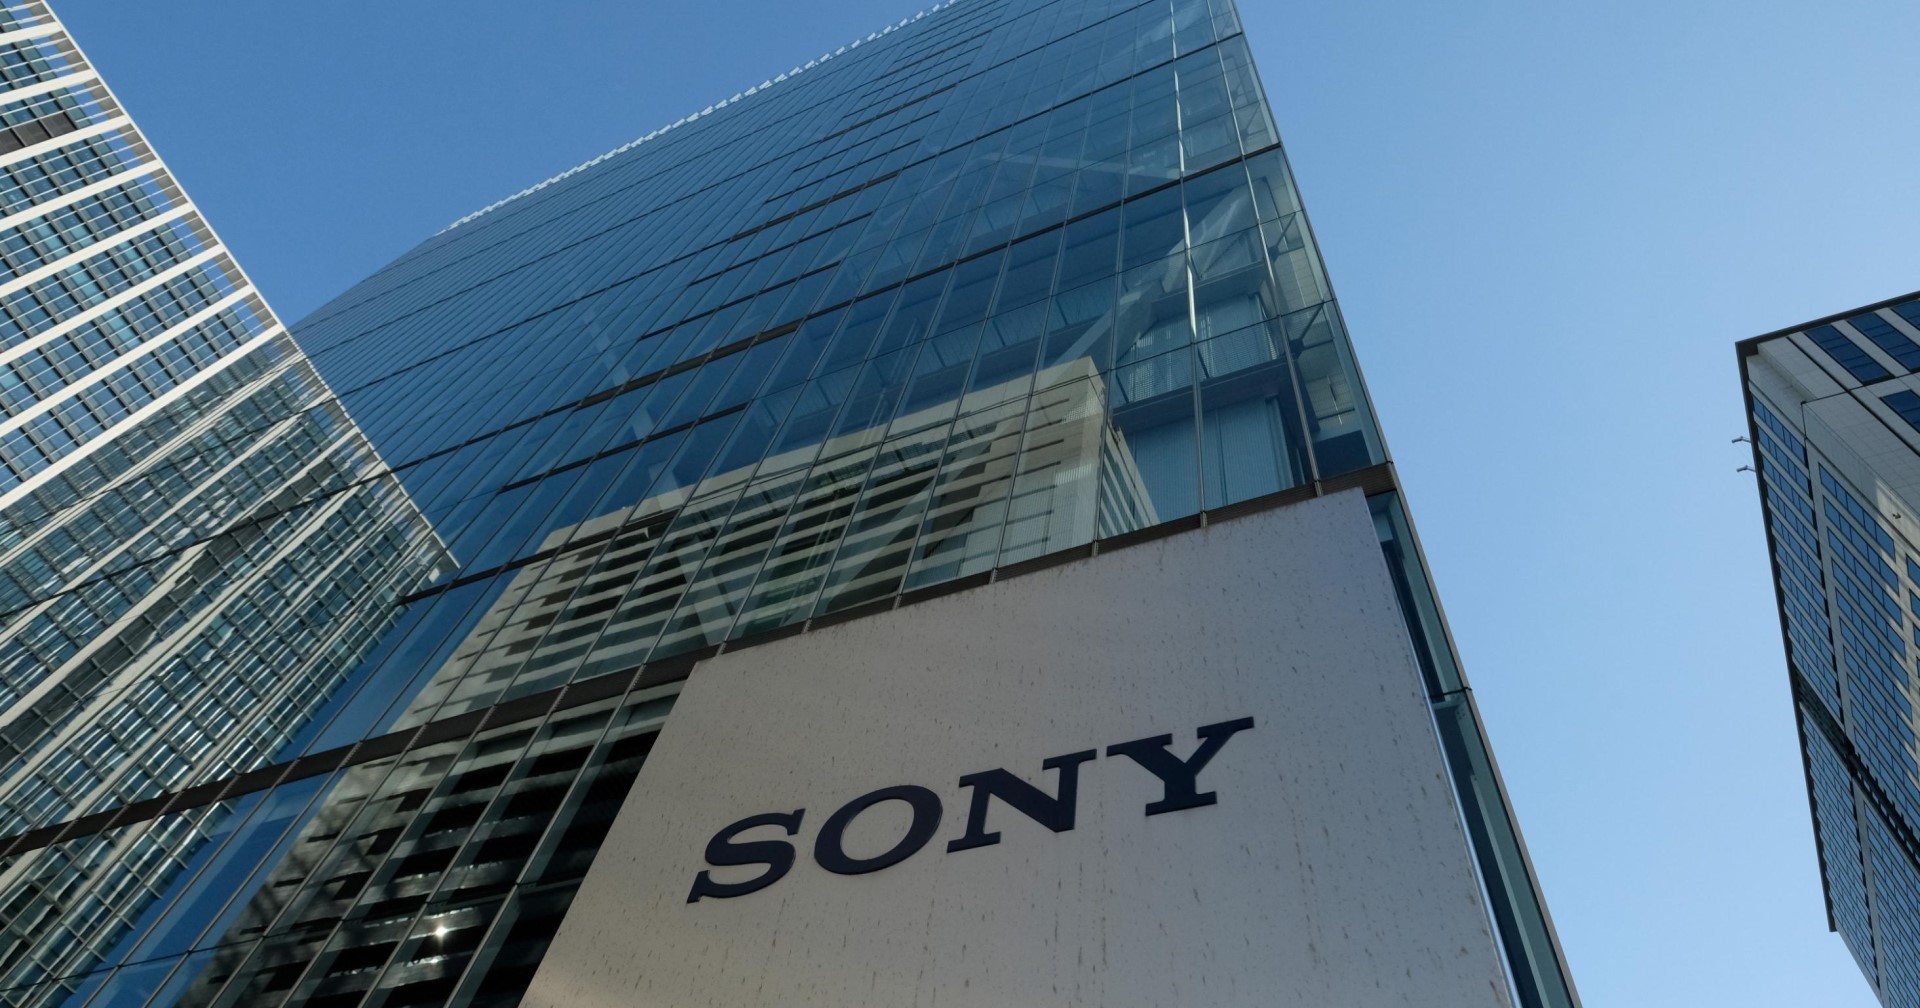 แพงทั้งแผ่นดิน! Sony Japan ปรับขึ้นราคาสินค้ากว่า 109 รายการ สูงสุด 31%